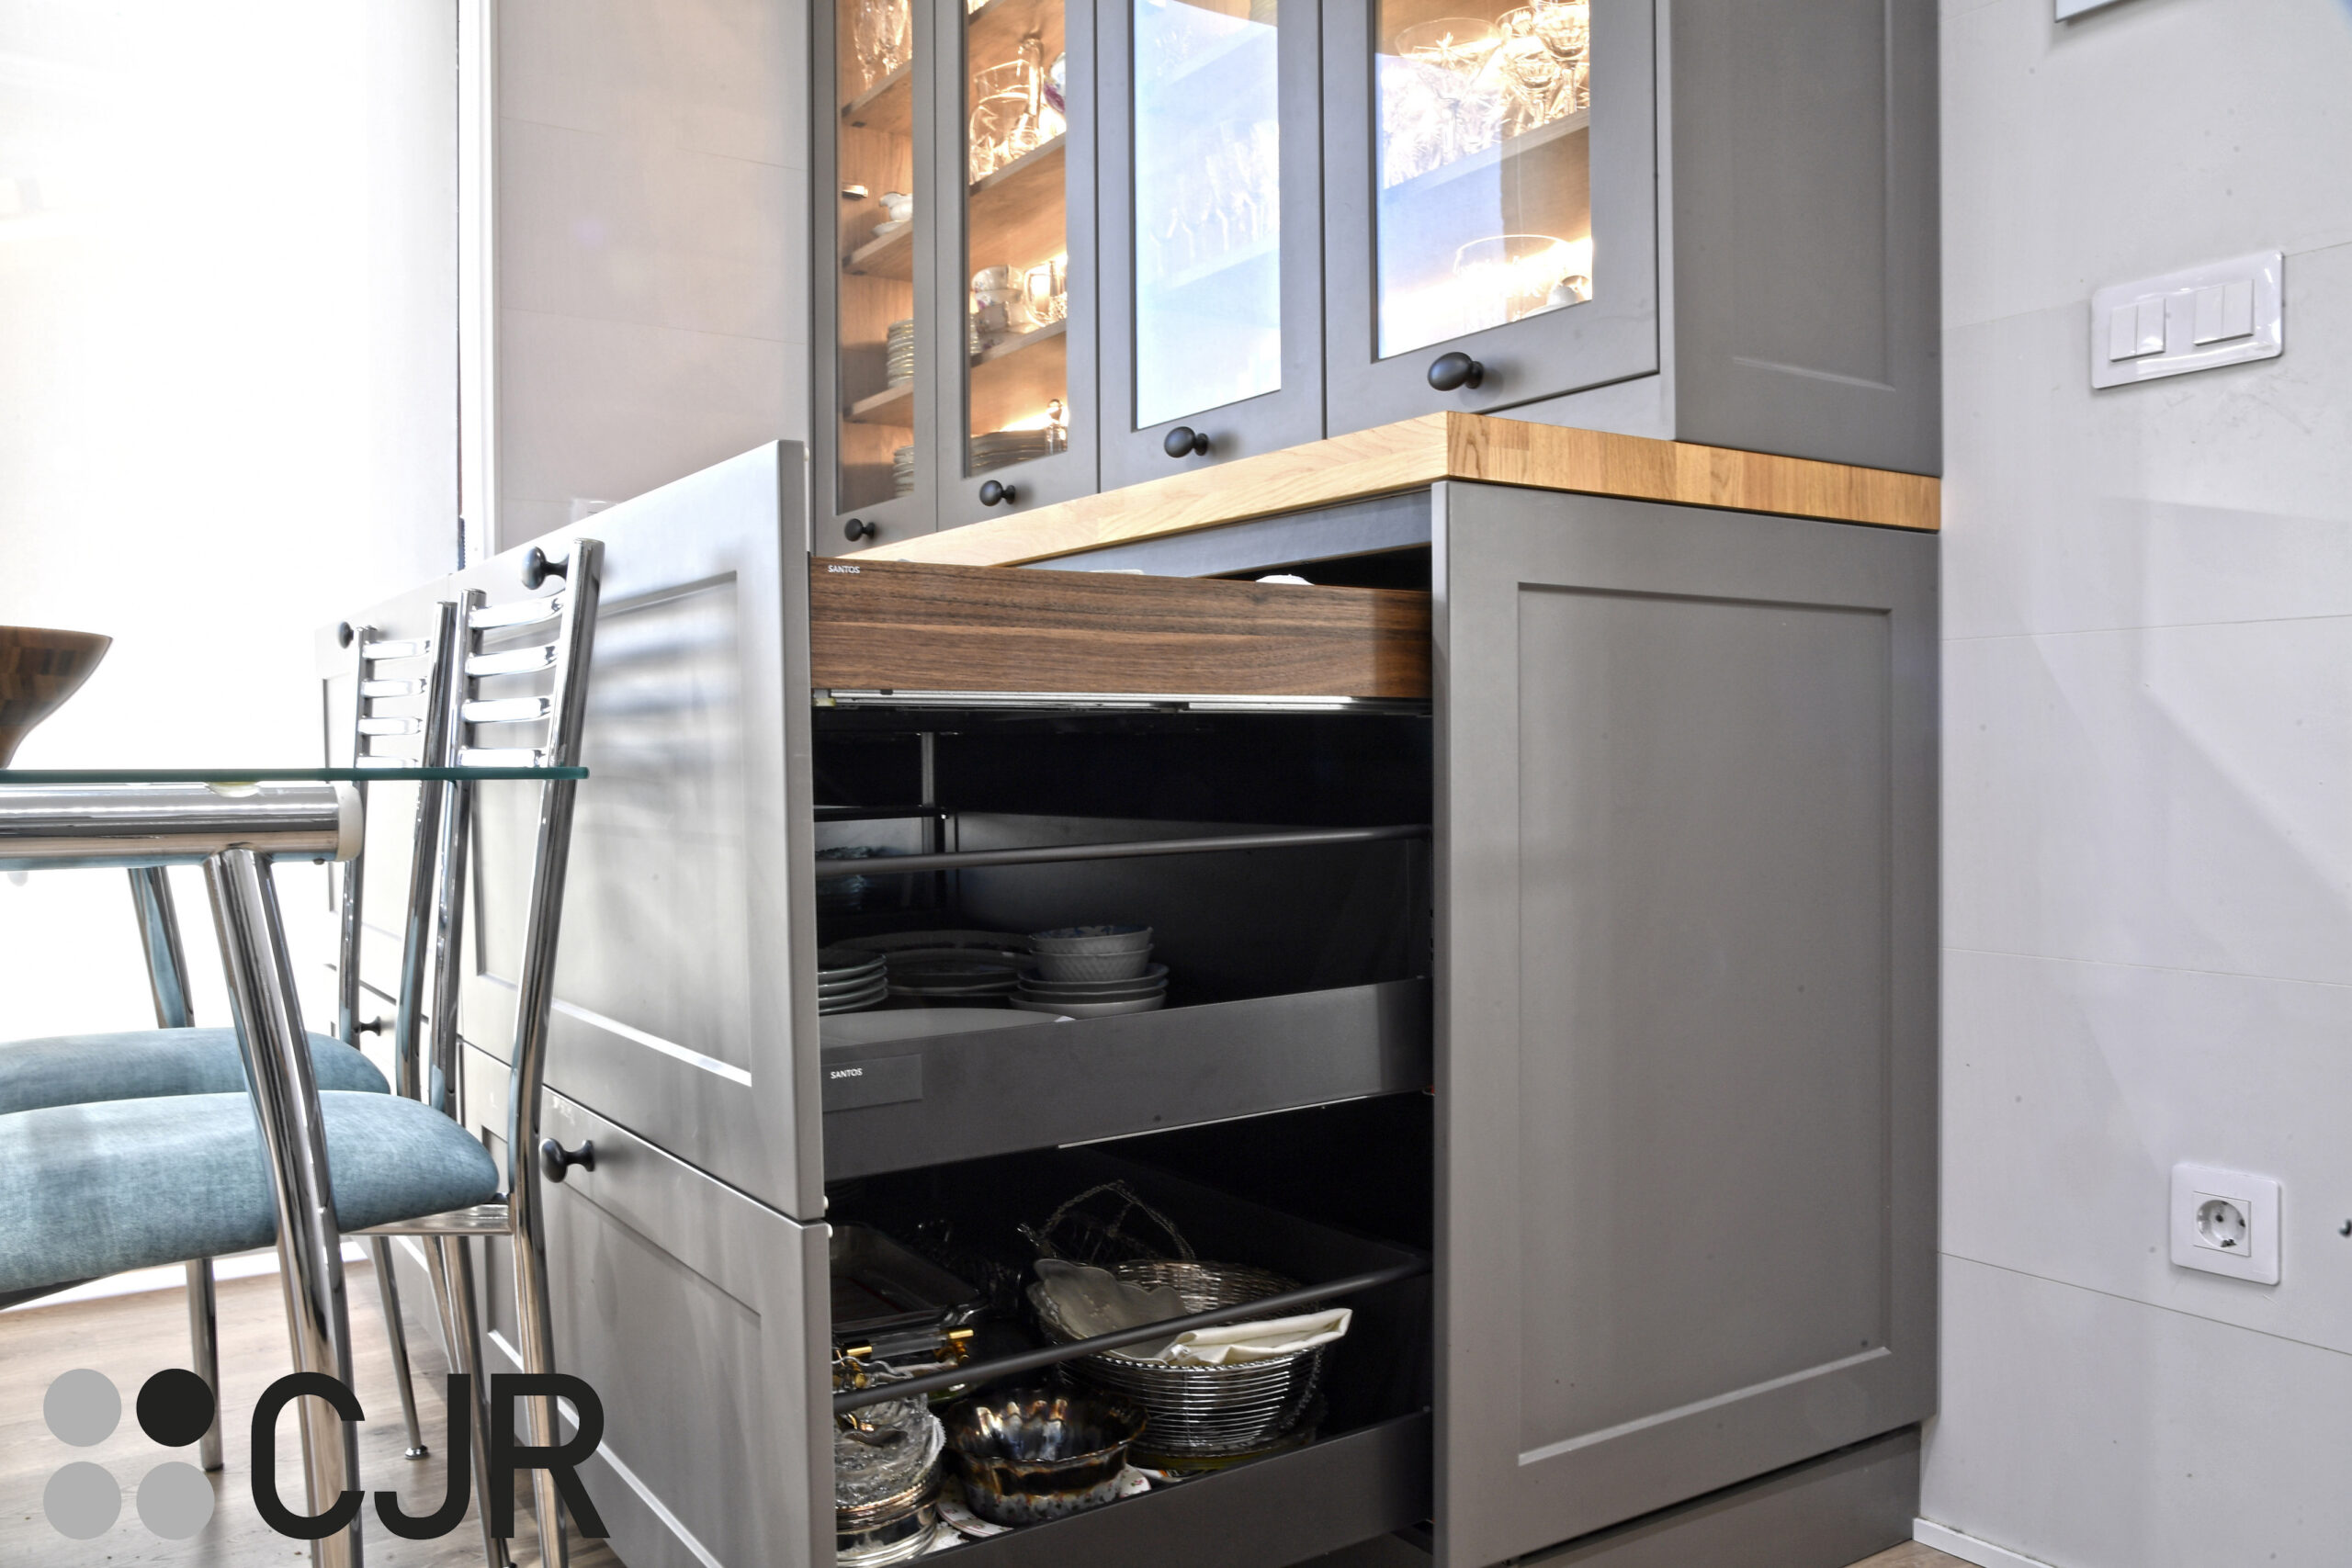 desayunador de cocinas grises y madera modernas con vitrina iluminadas cocinas cjr